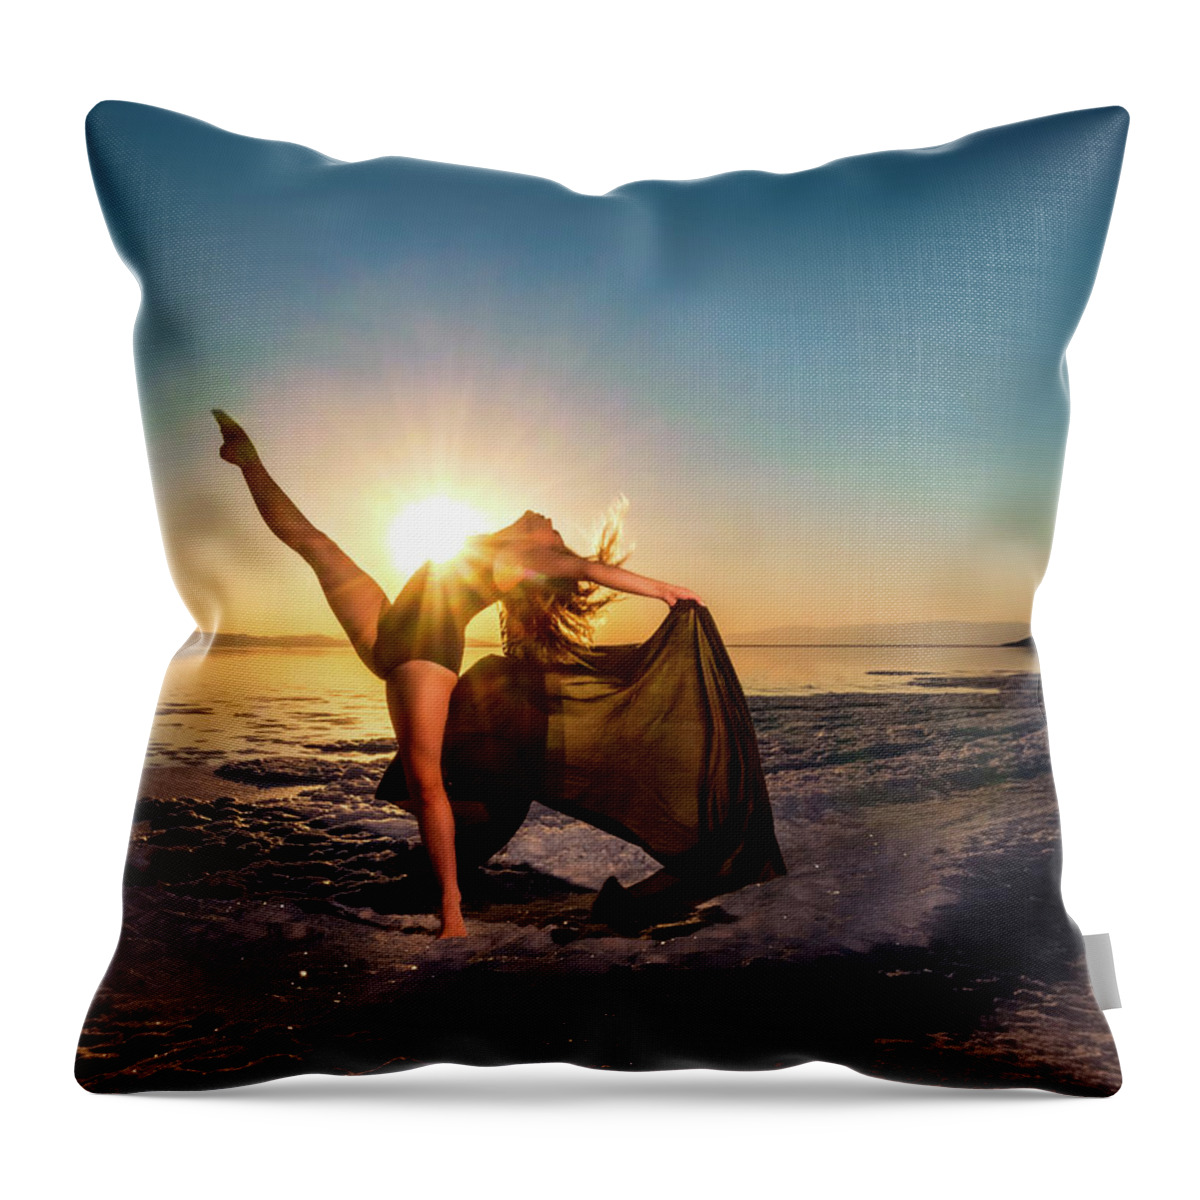 Dance Throw Pillow featuring the photograph Summer Kicks by Dave Koch